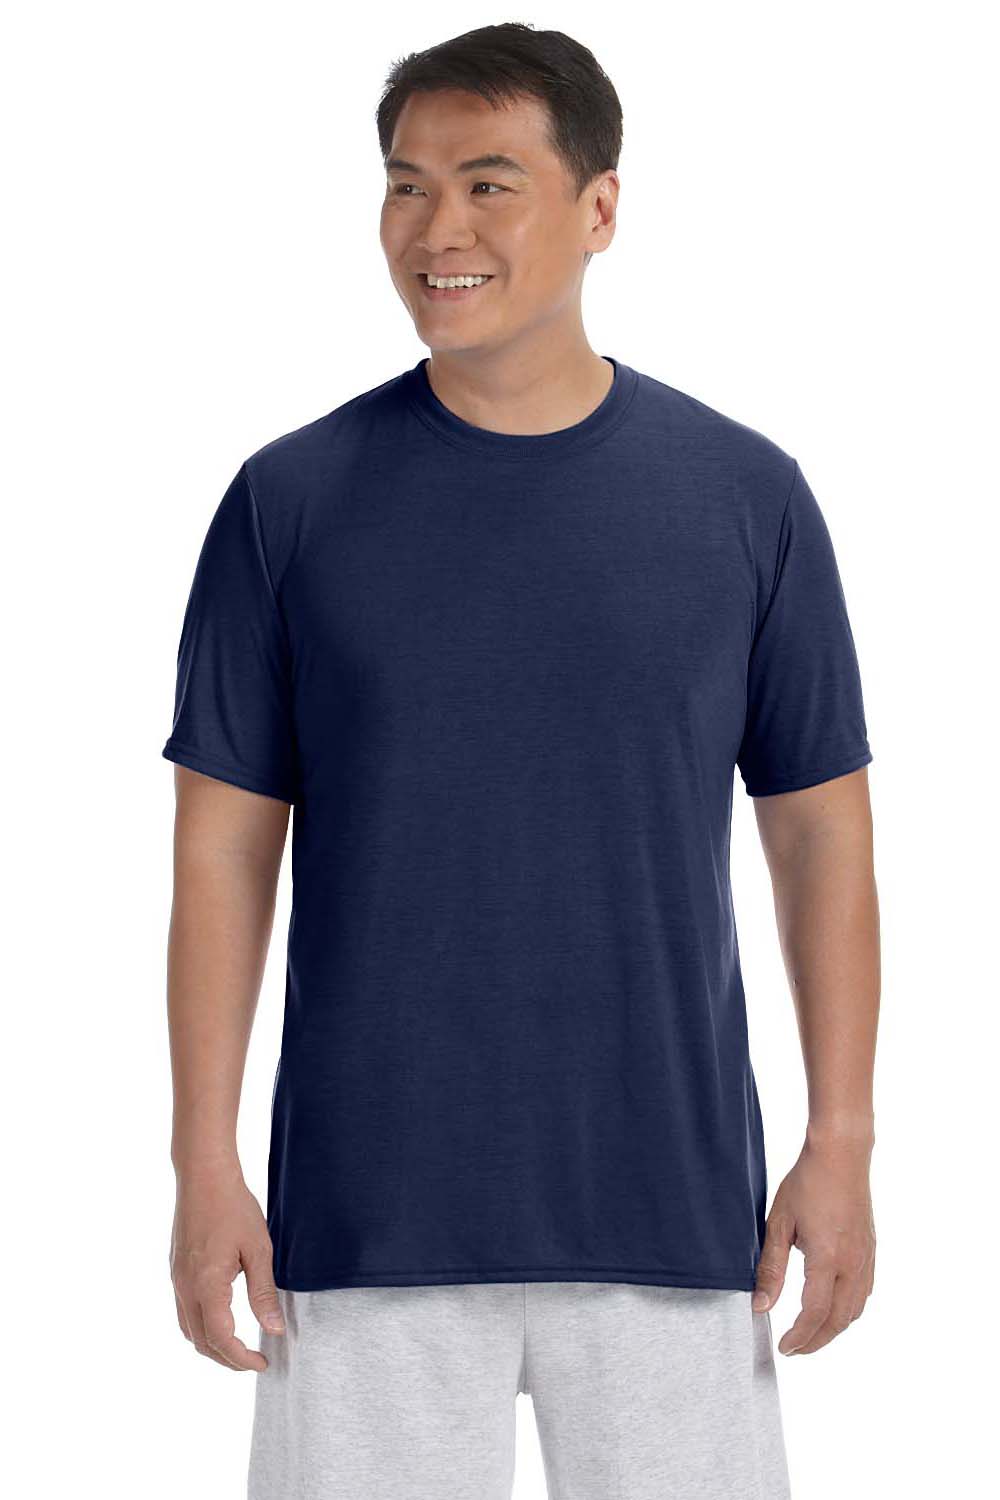 Gildan G420 Mens Performance Jersey Moisture Wicking Short Sleeve Crewneck T-Shirt Navy Blue Front